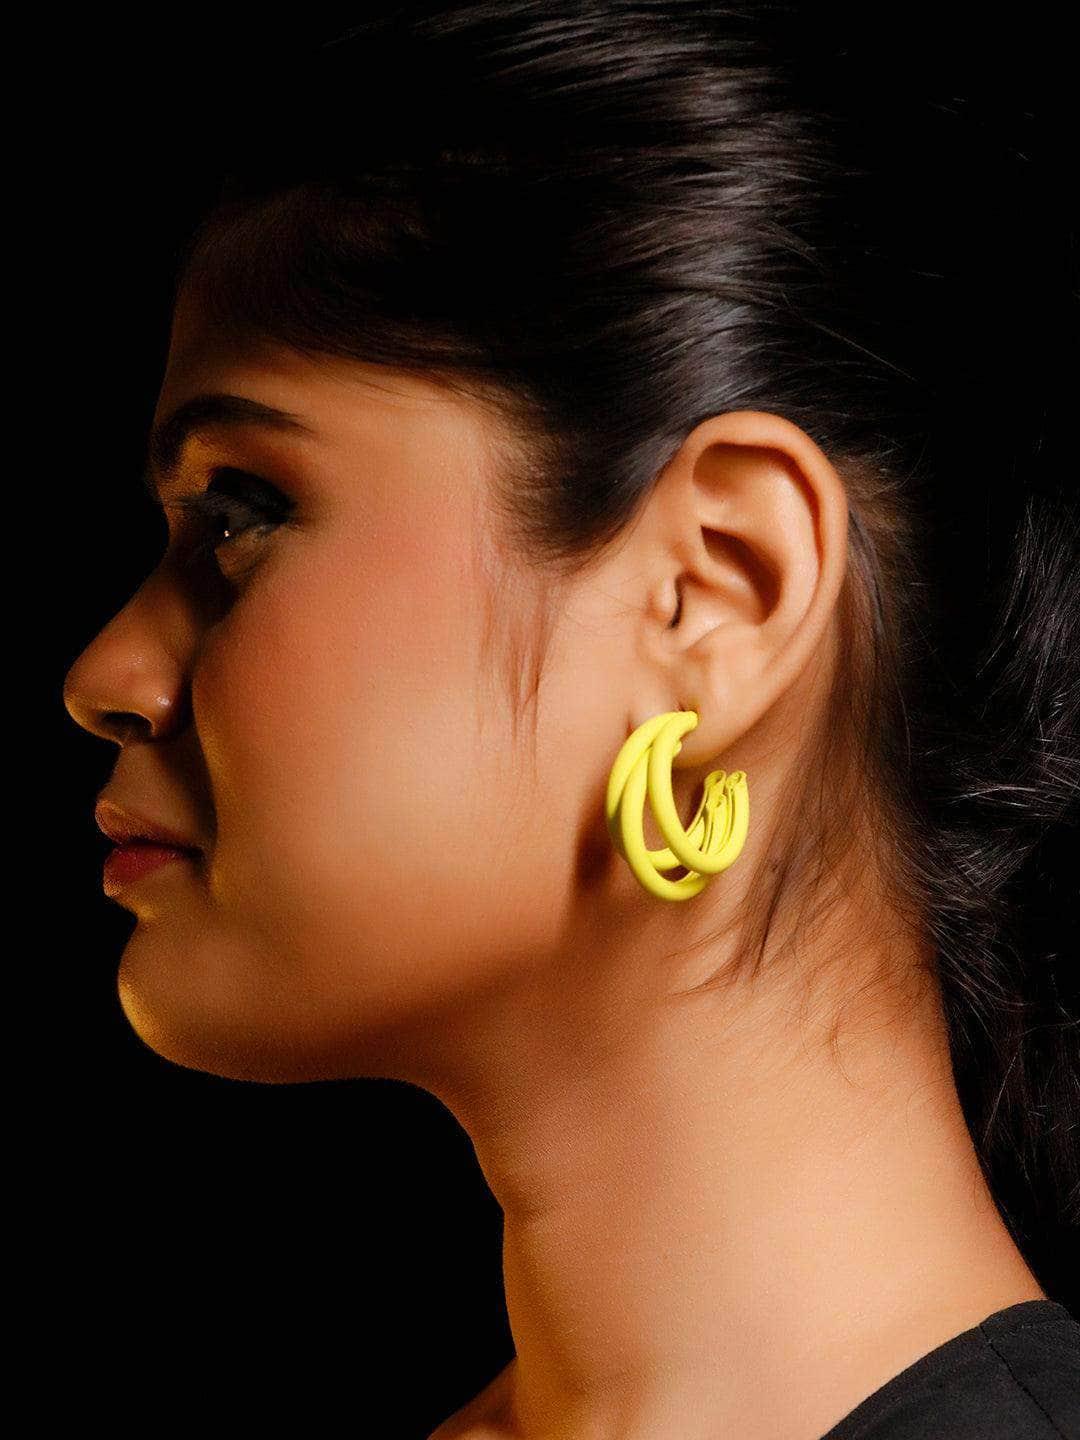 Ishhaara Triple Hoop Earrings Yellow